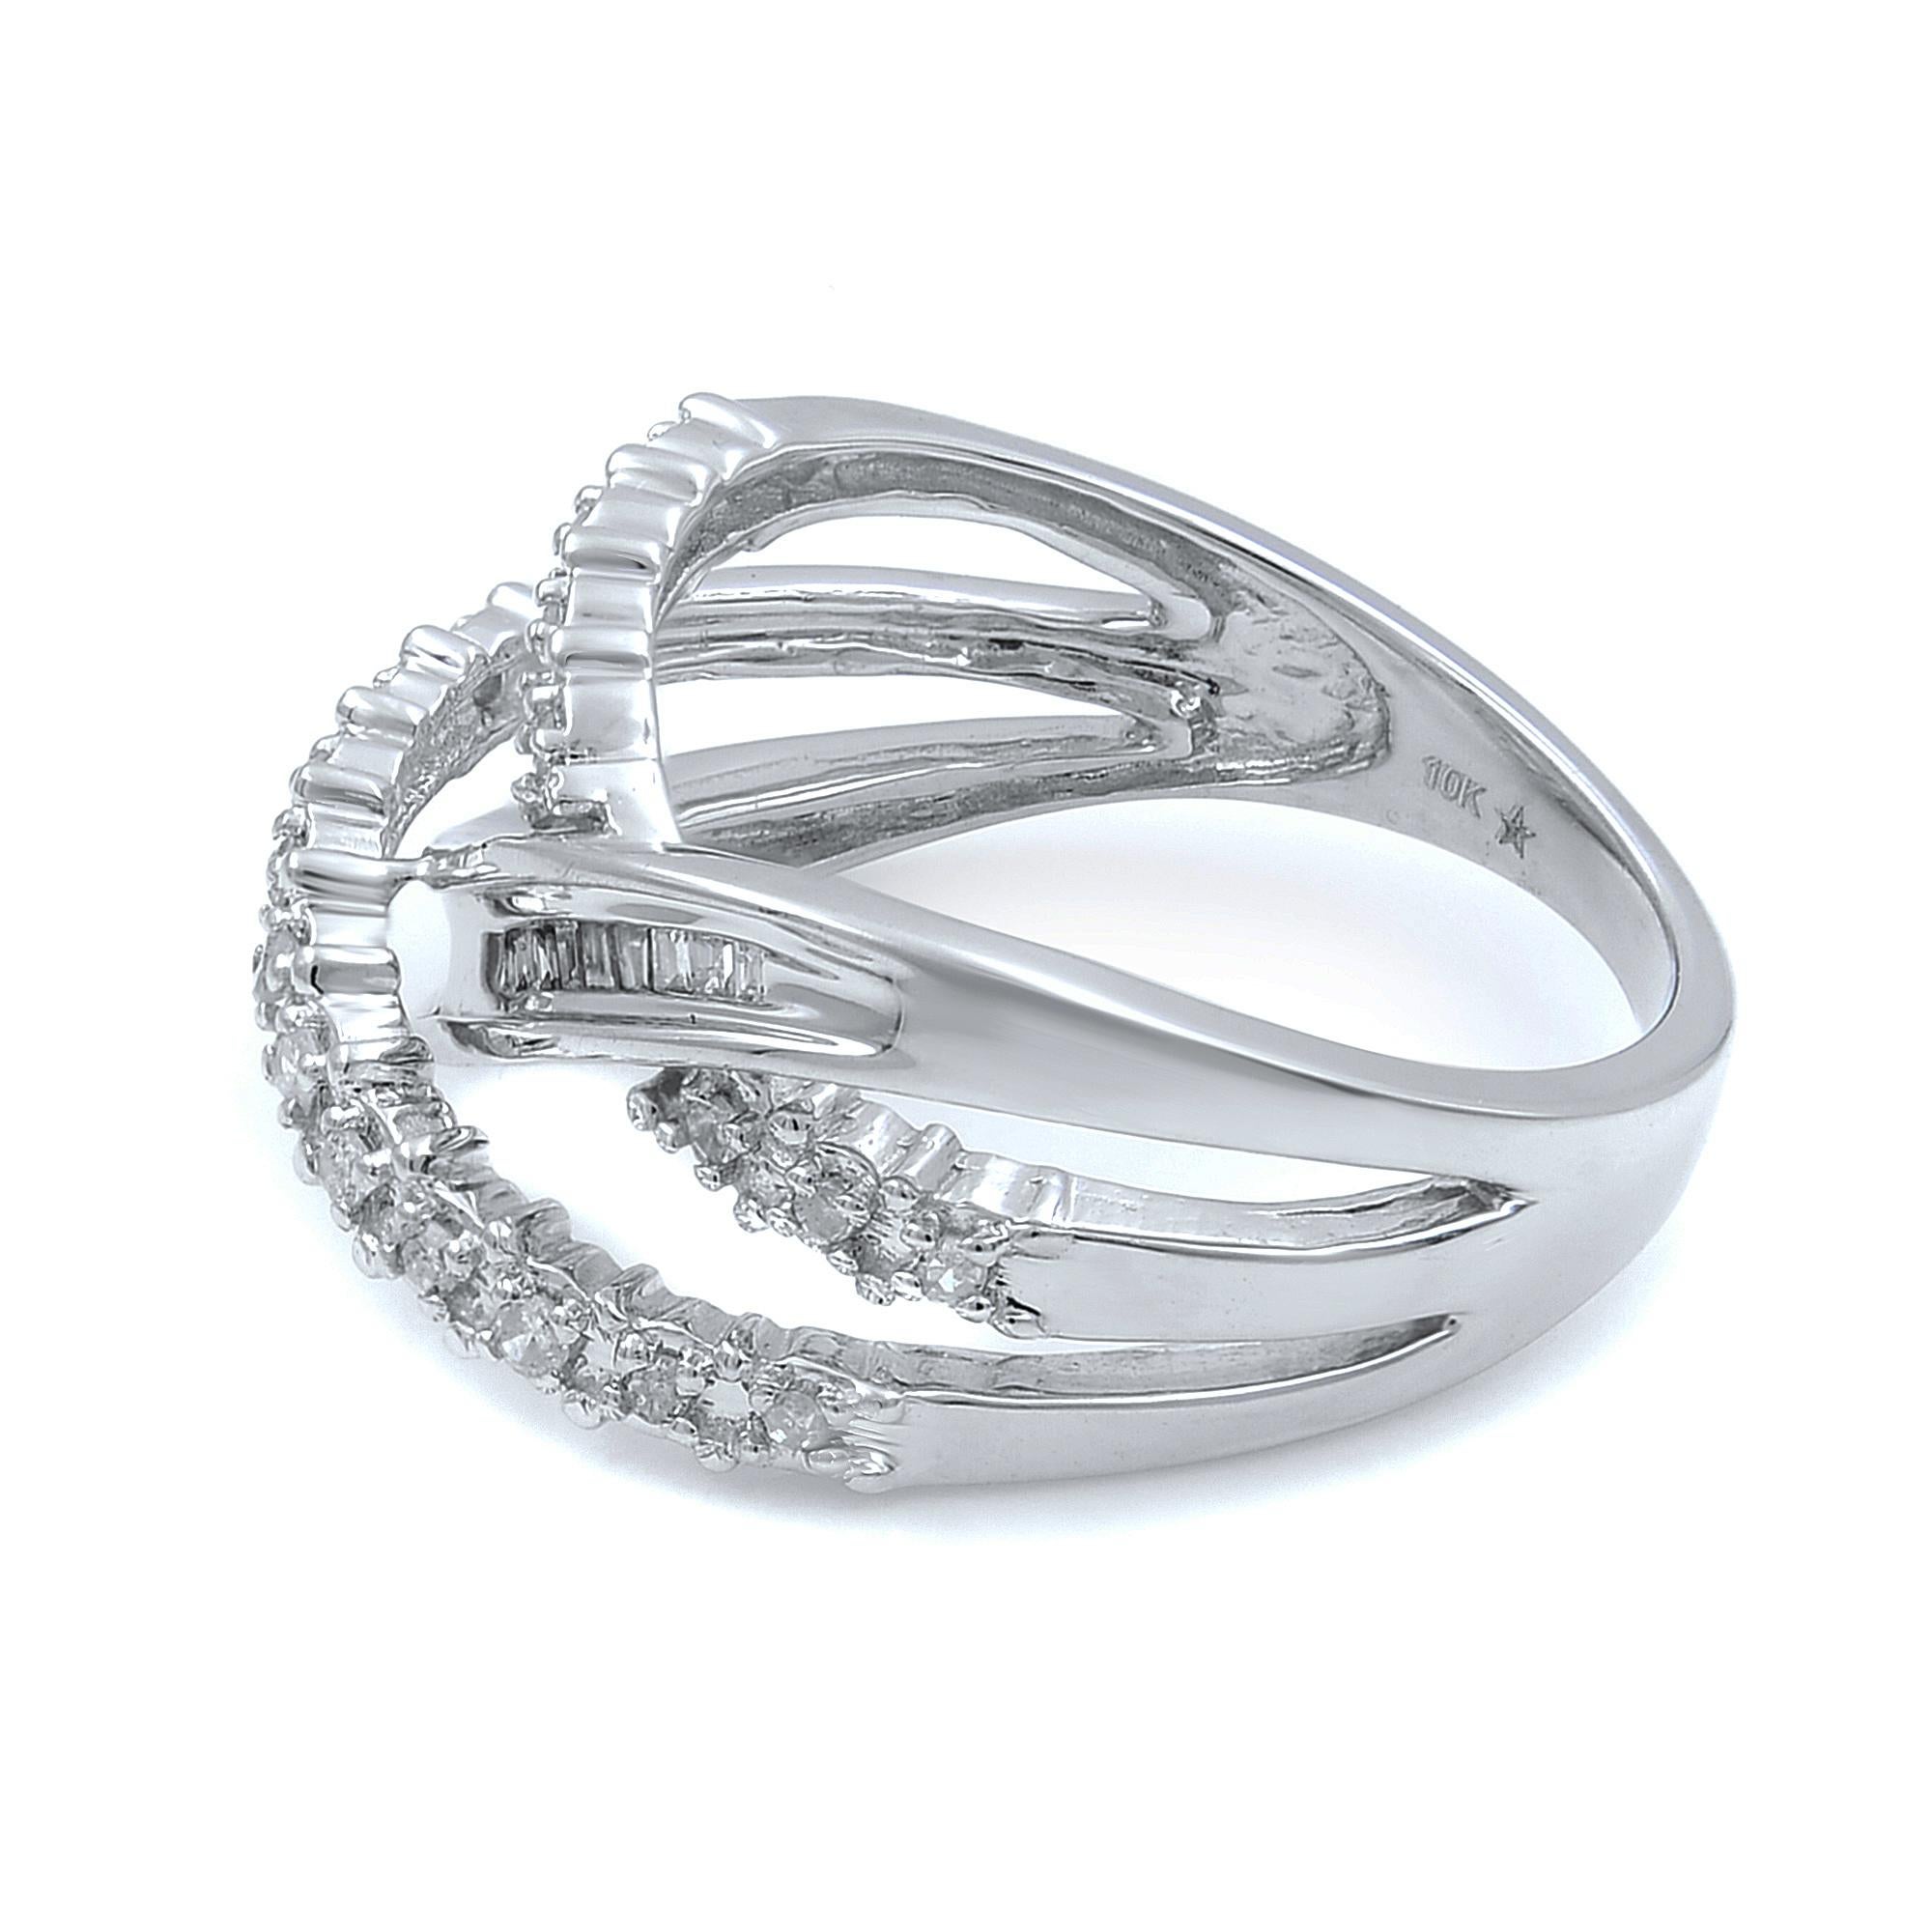 Ein wunderschöner mehrreihiger Ehering mit Diamanten, gefertigt aus 10 Karat Weißgold. Dieser Ring ist mit runden und Baguette-Diamanten besetzt. Die Breite des Rings beträgt 10,7 mm und das Gesamtgewicht der Diamanten 0,60 Karat. Der Ring wiegt